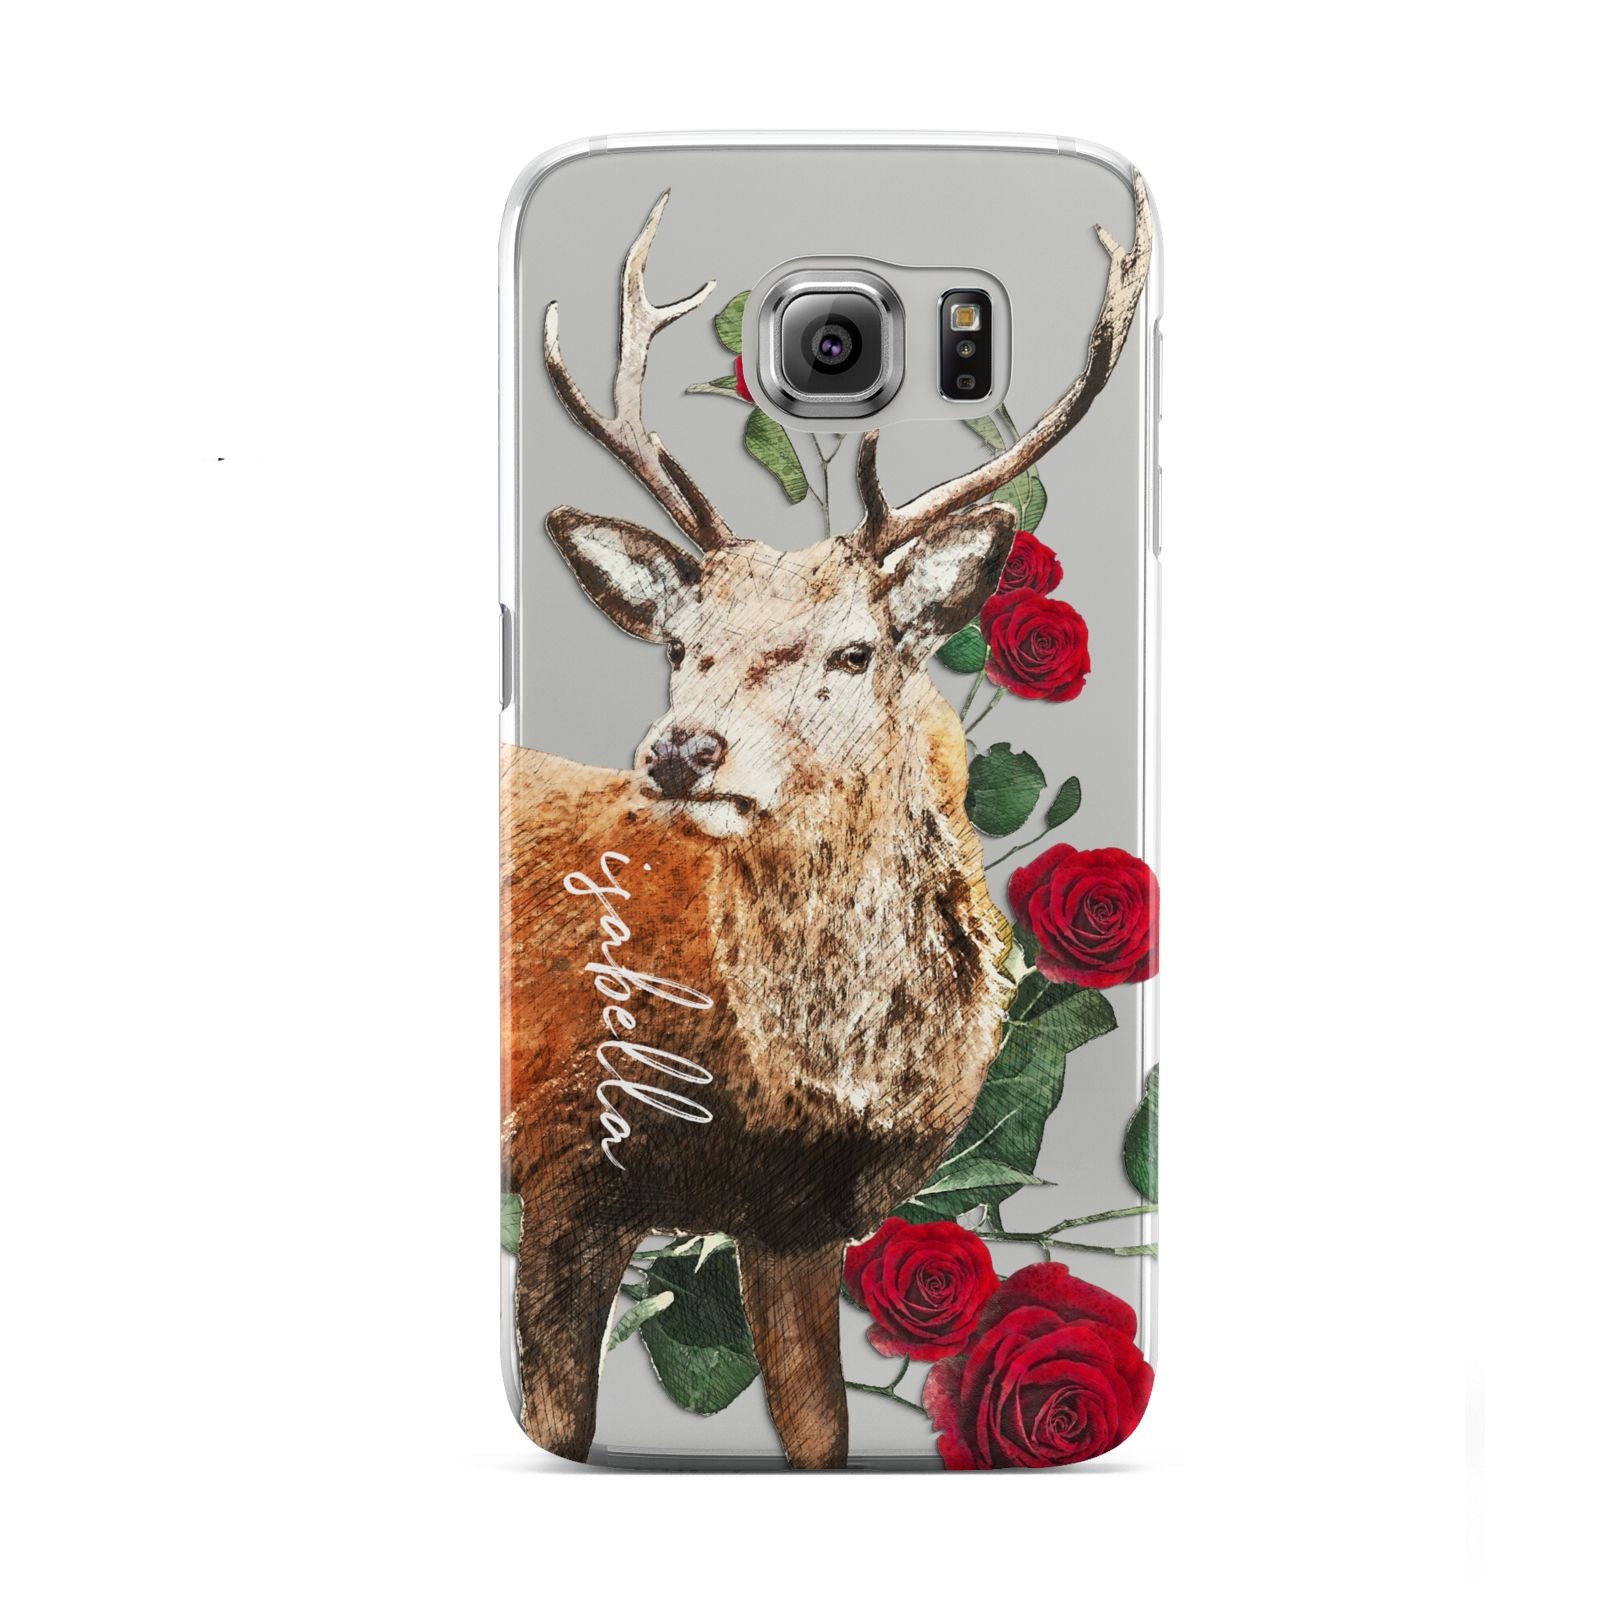 Personalised Deer Name Samsung Galaxy S6 Case